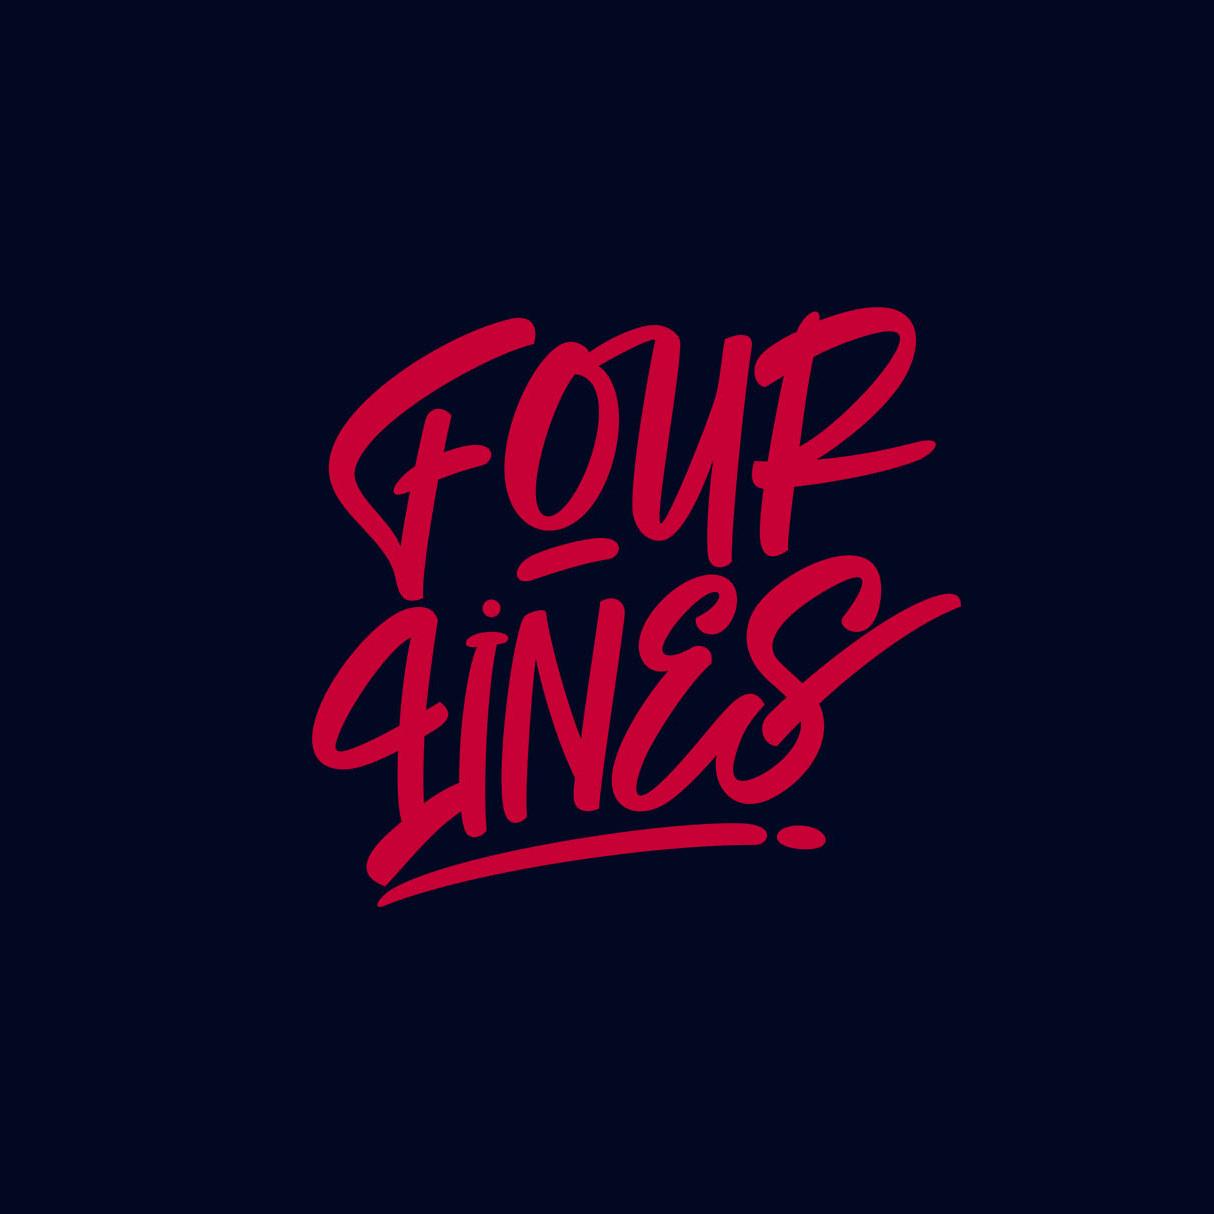 Fourlines.design